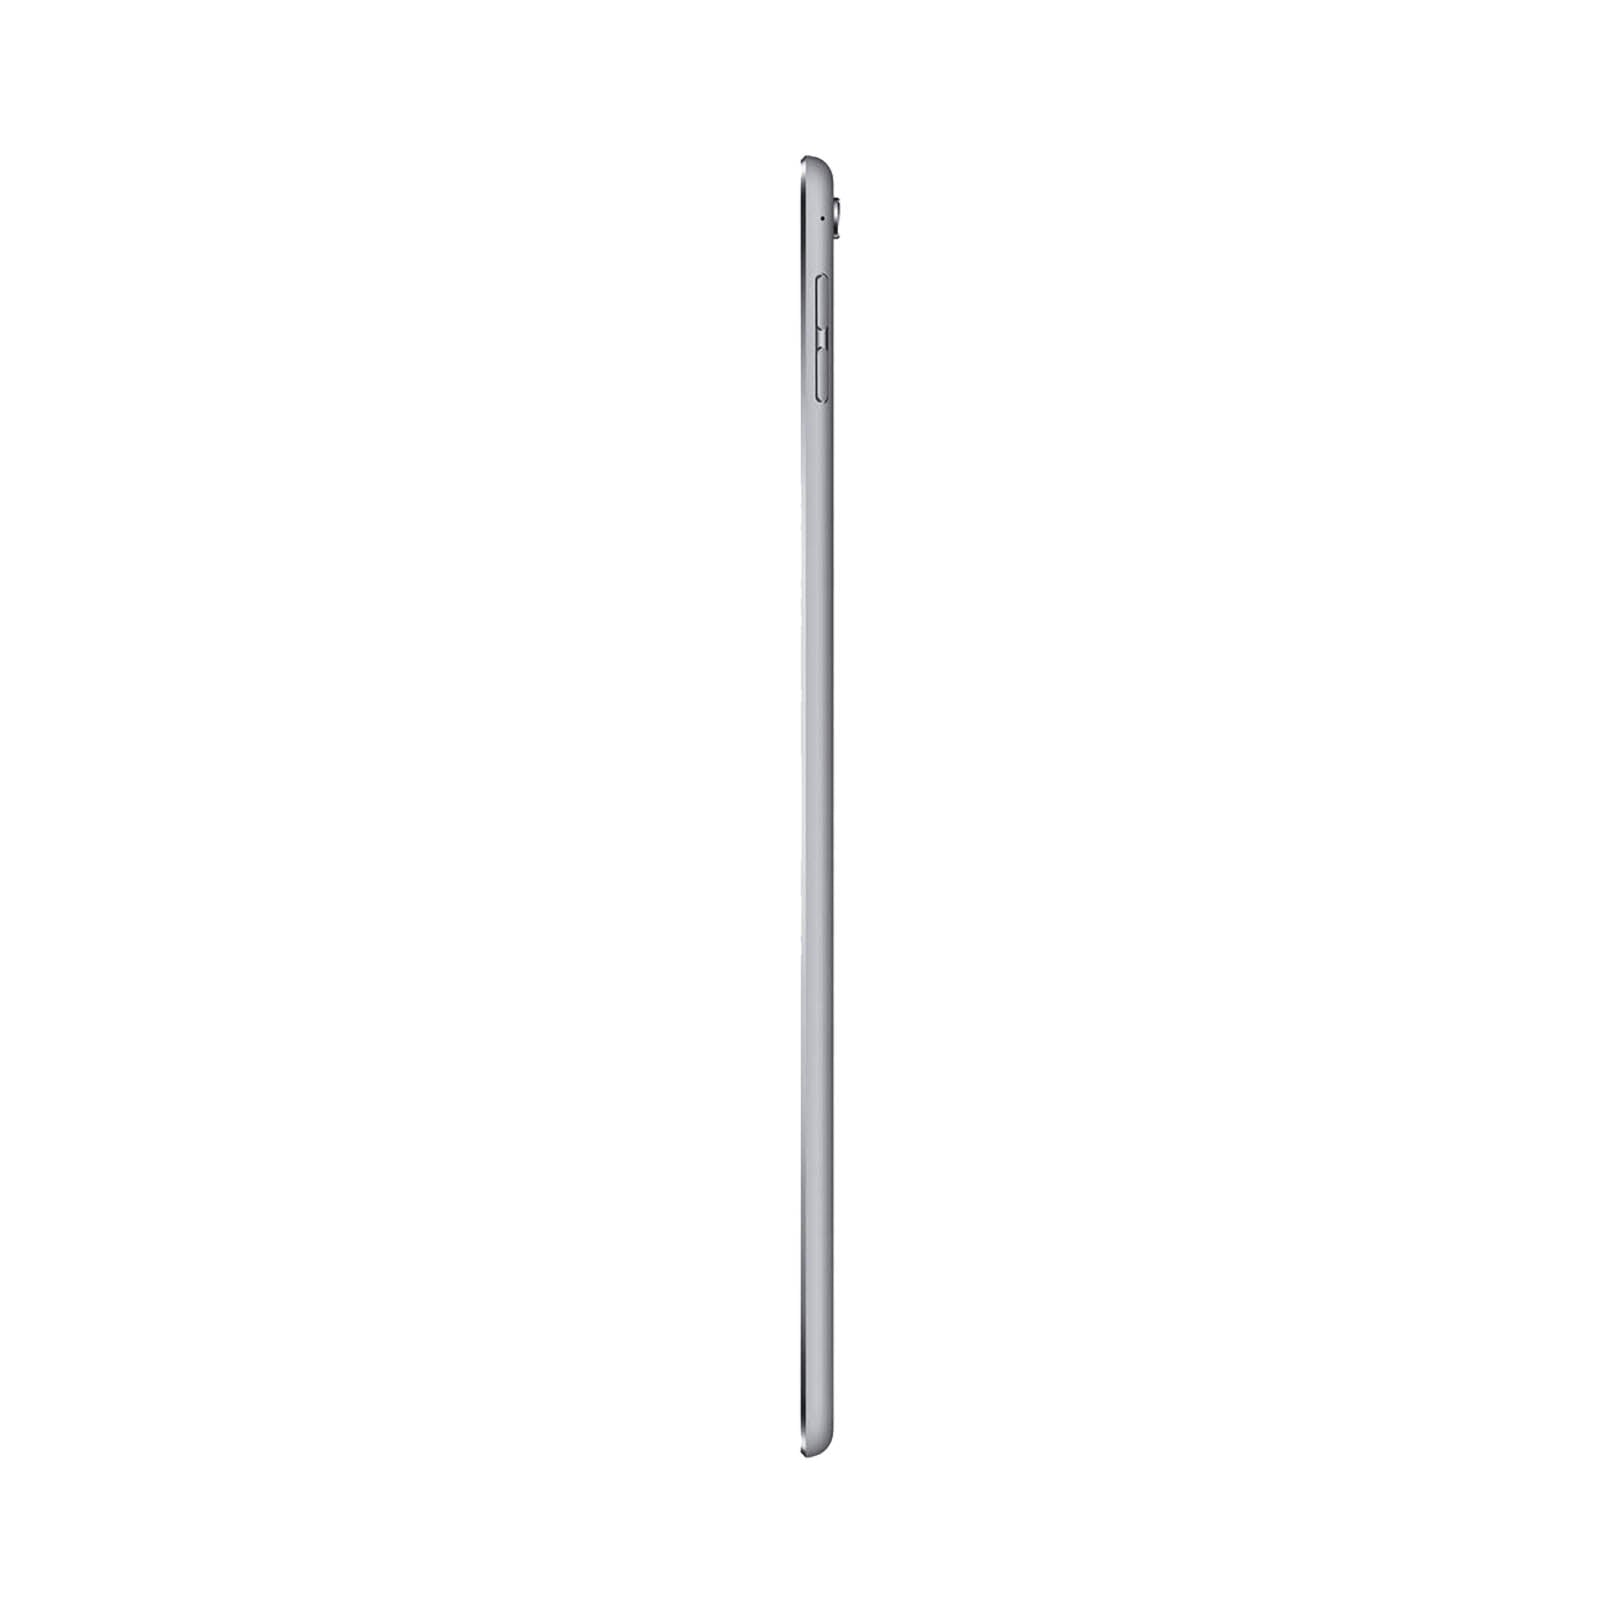 iPad Pro 9.7 Inch 128GB Space Grey Good - WiFi